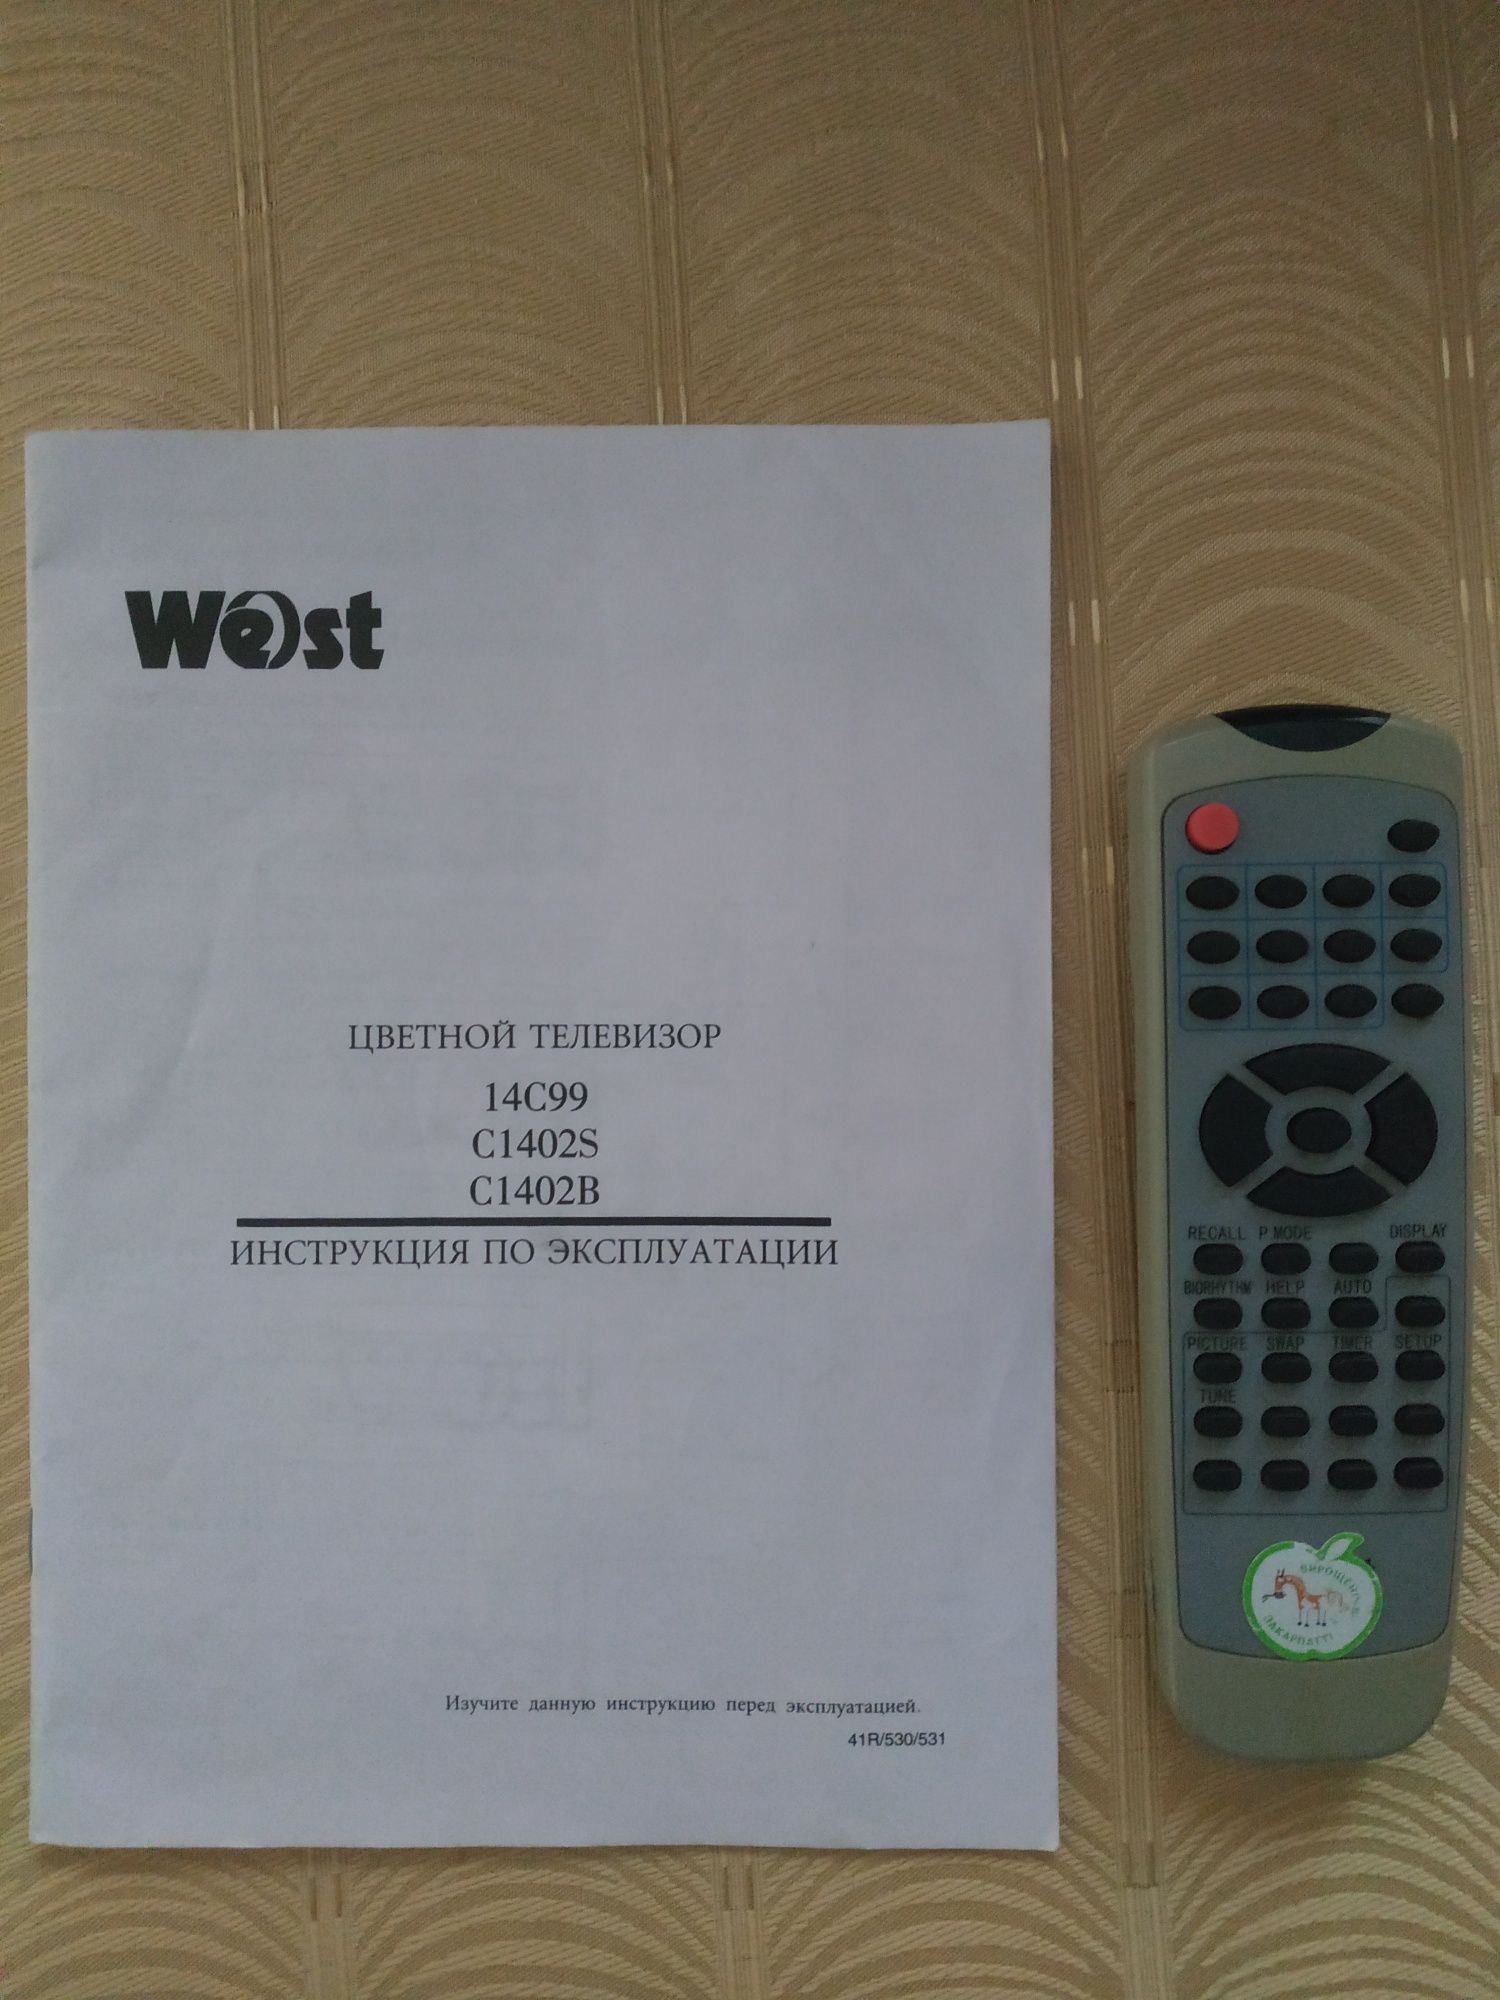 Телевизор West C1402S